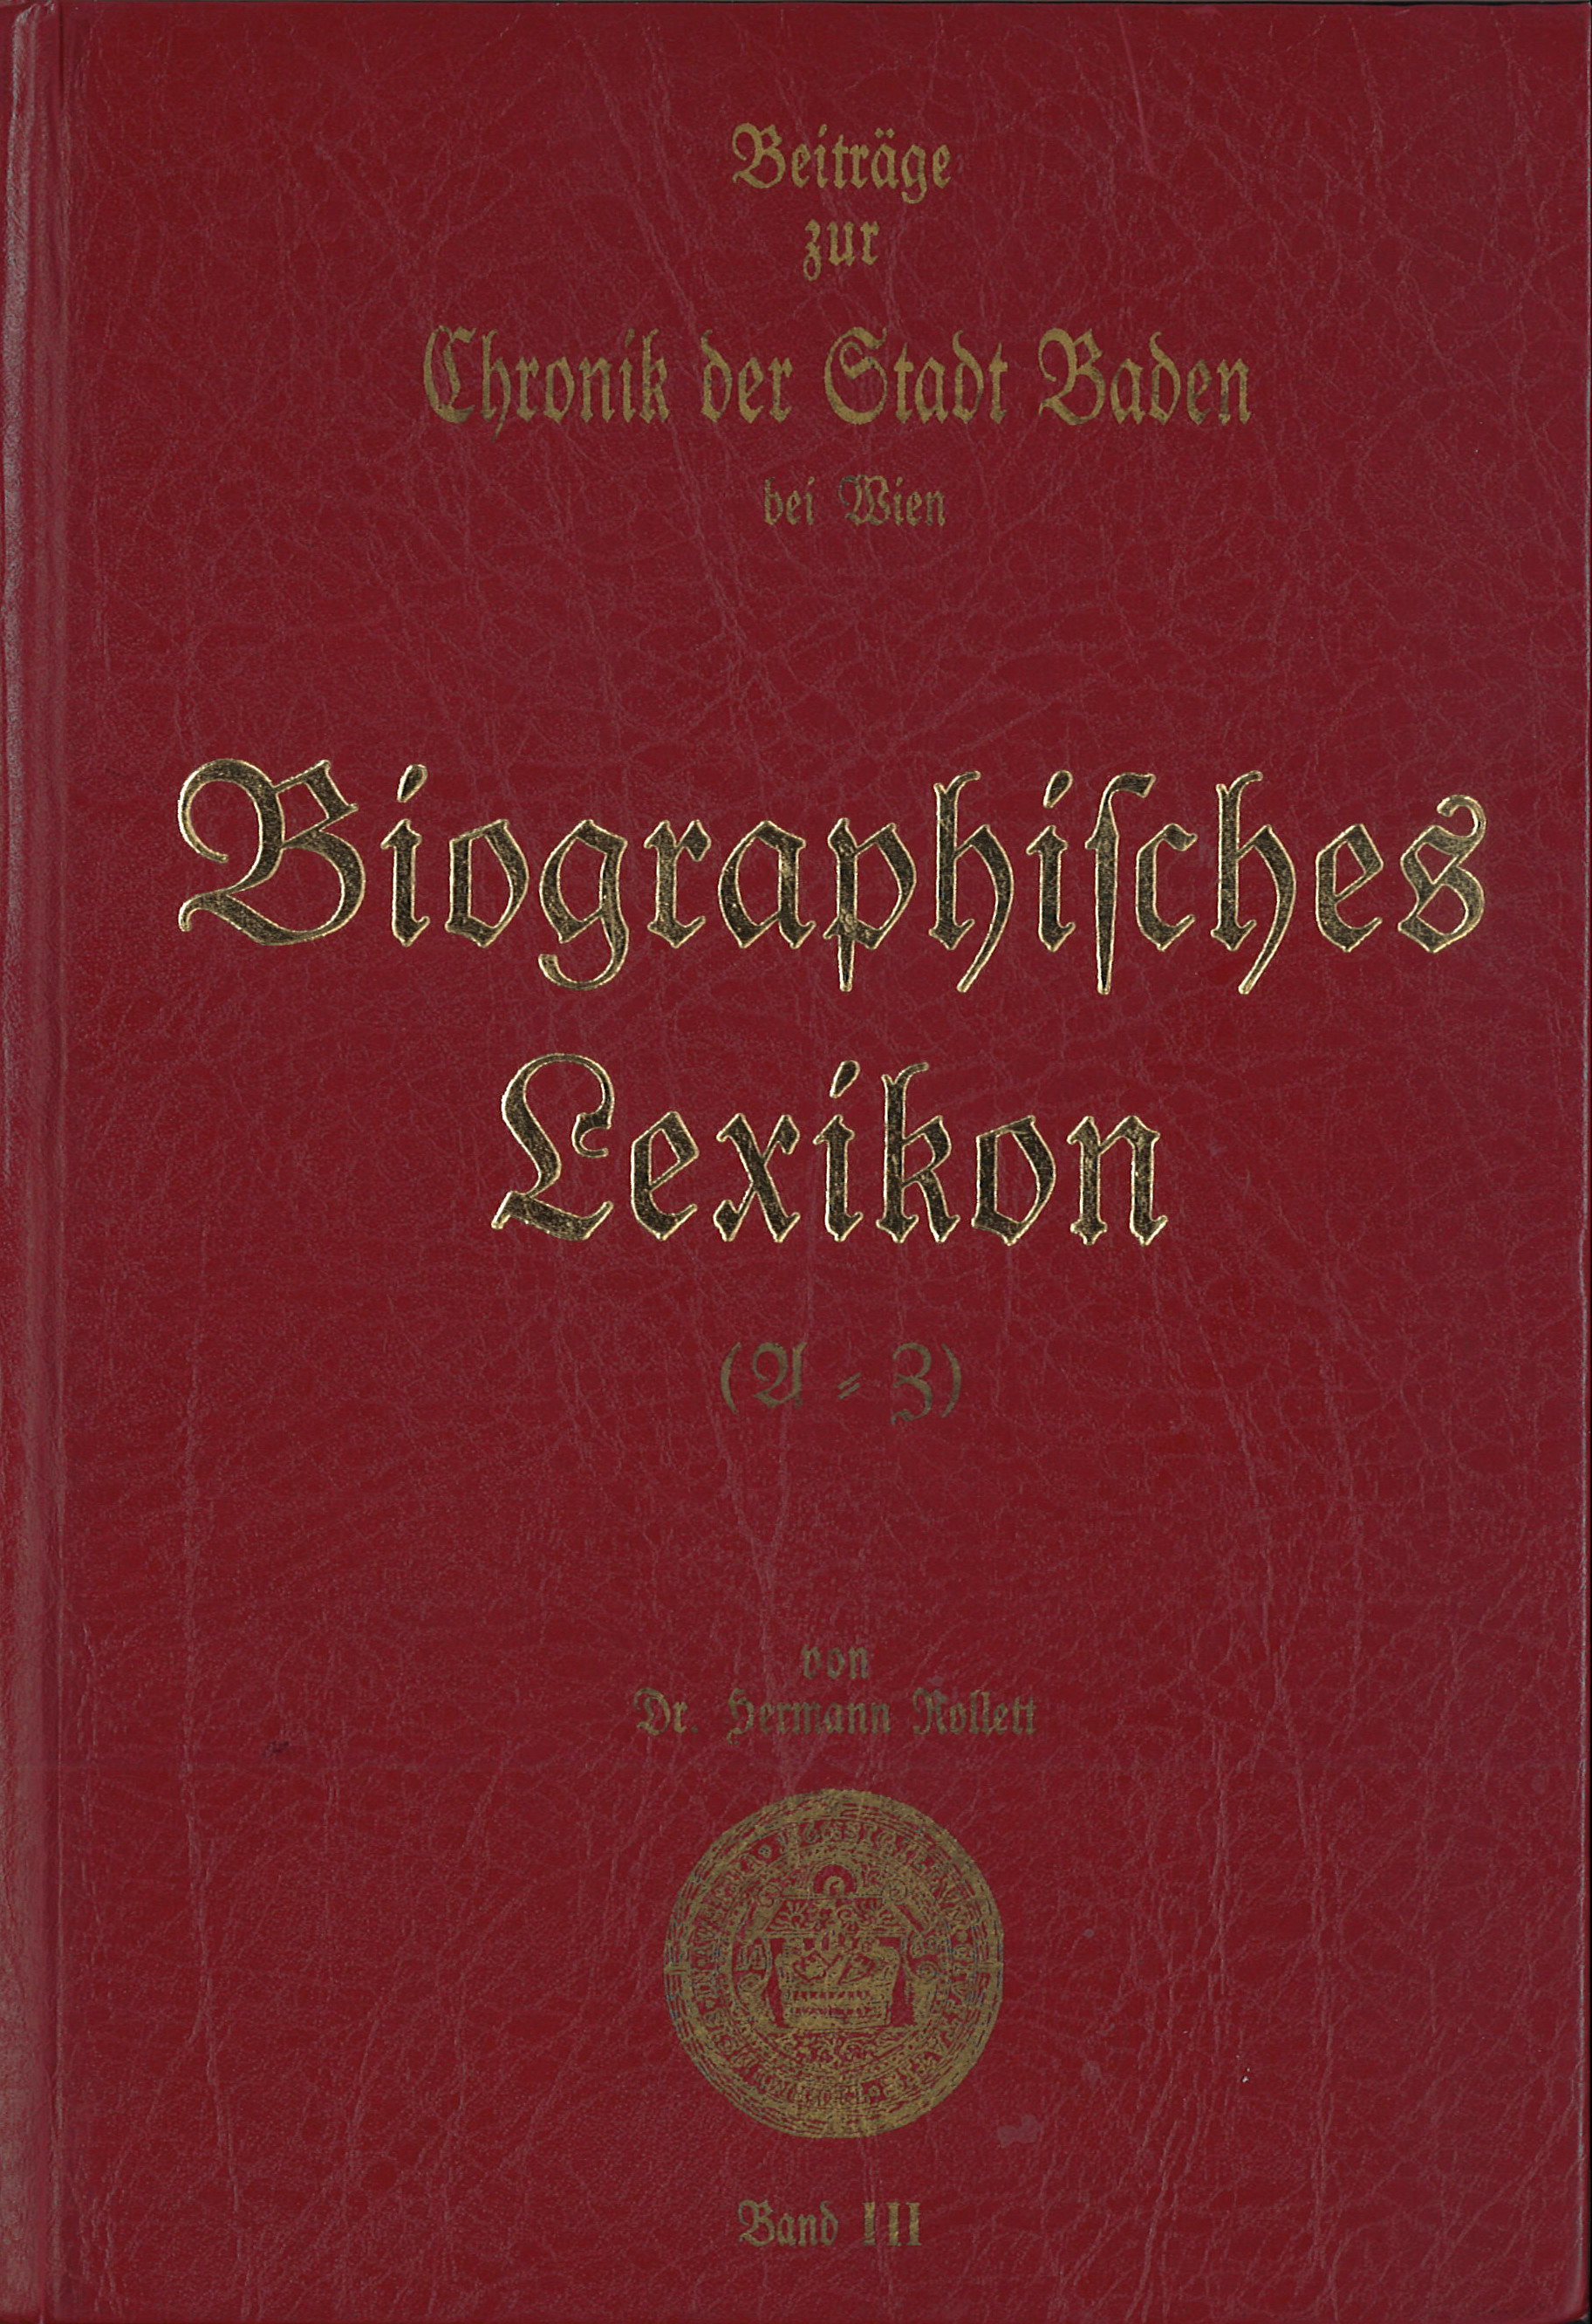 Beiträge zur Chronik Chronik der Stadt Baden bei Wien von Dr. Hermann Rollett Band 3, 478 Seiten, Rudolf Maurer € 49,00